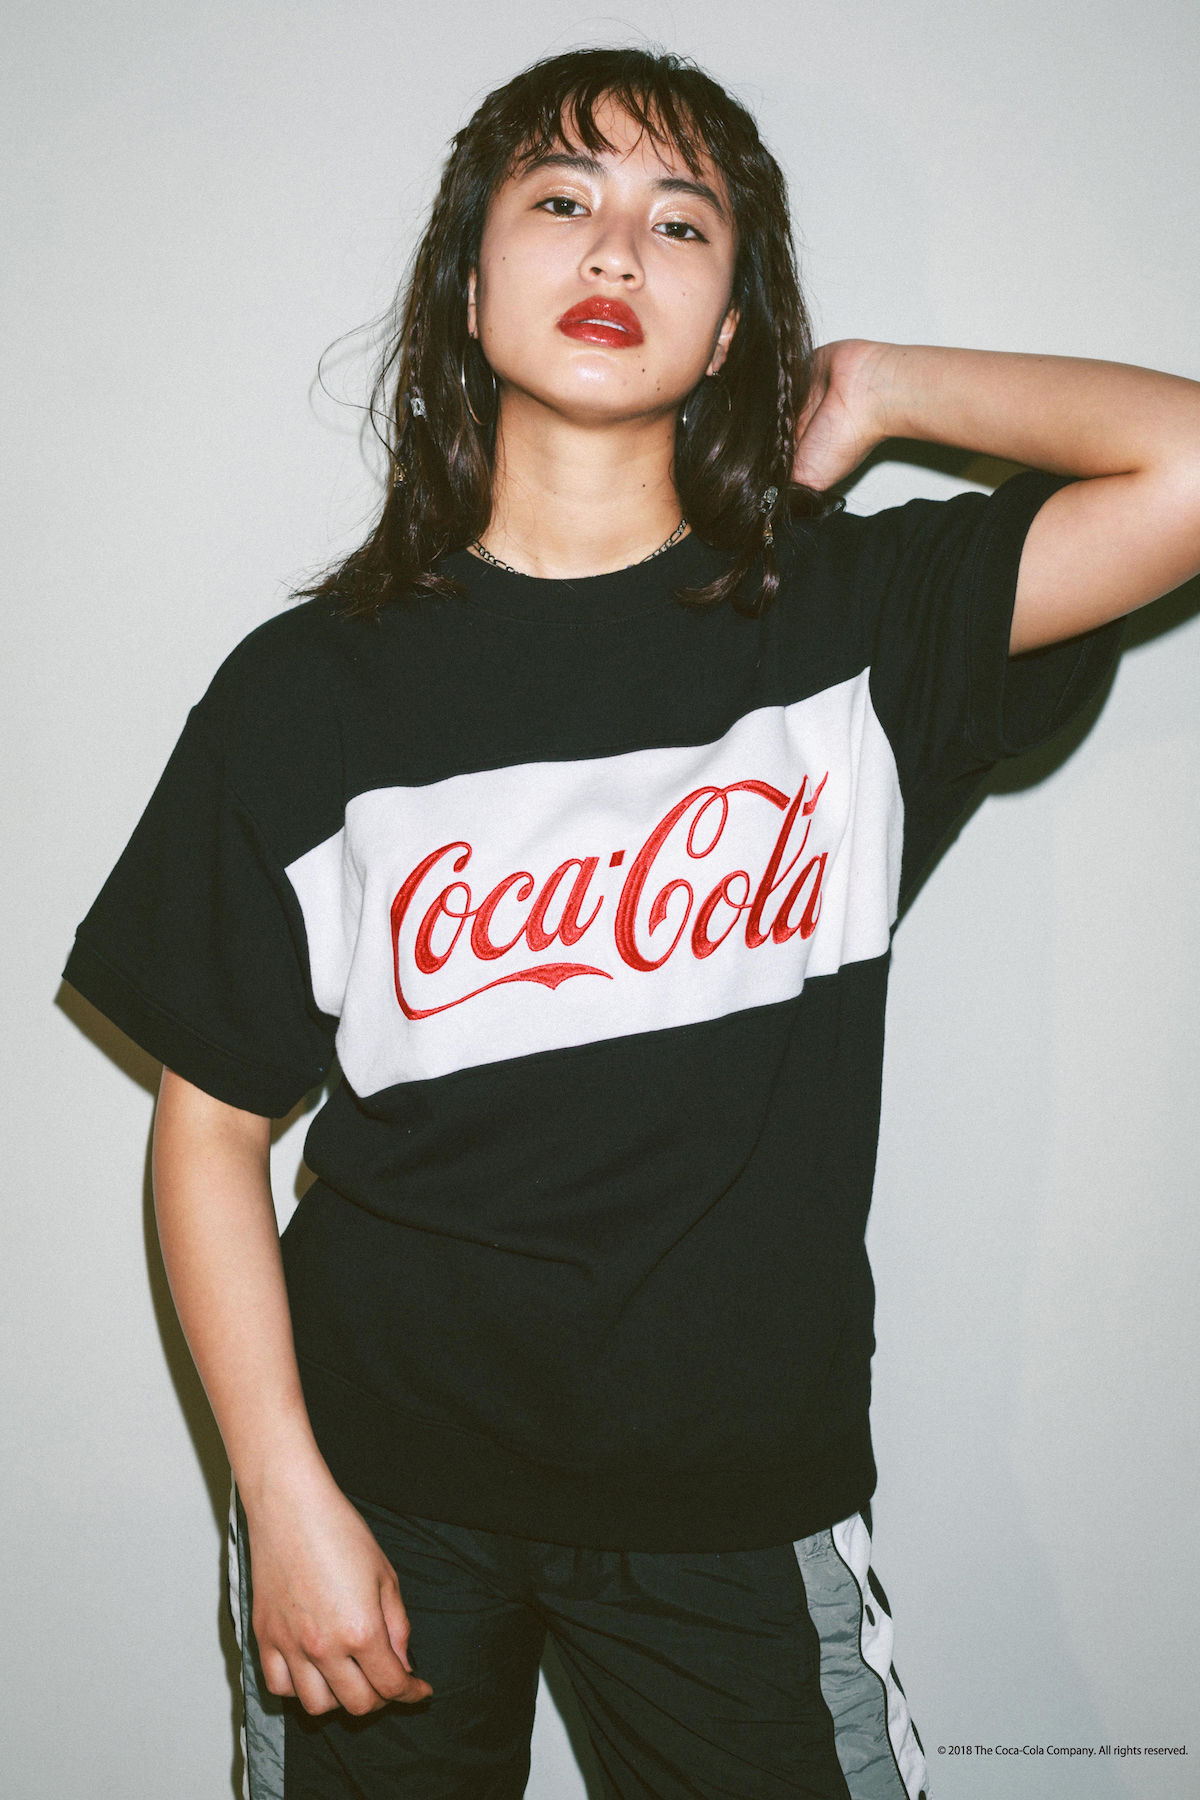 X Girl コカ コーラ コカ コーラ 中国語ロゴを採用したオリエンタルなtシャツなどが登場 Qetic